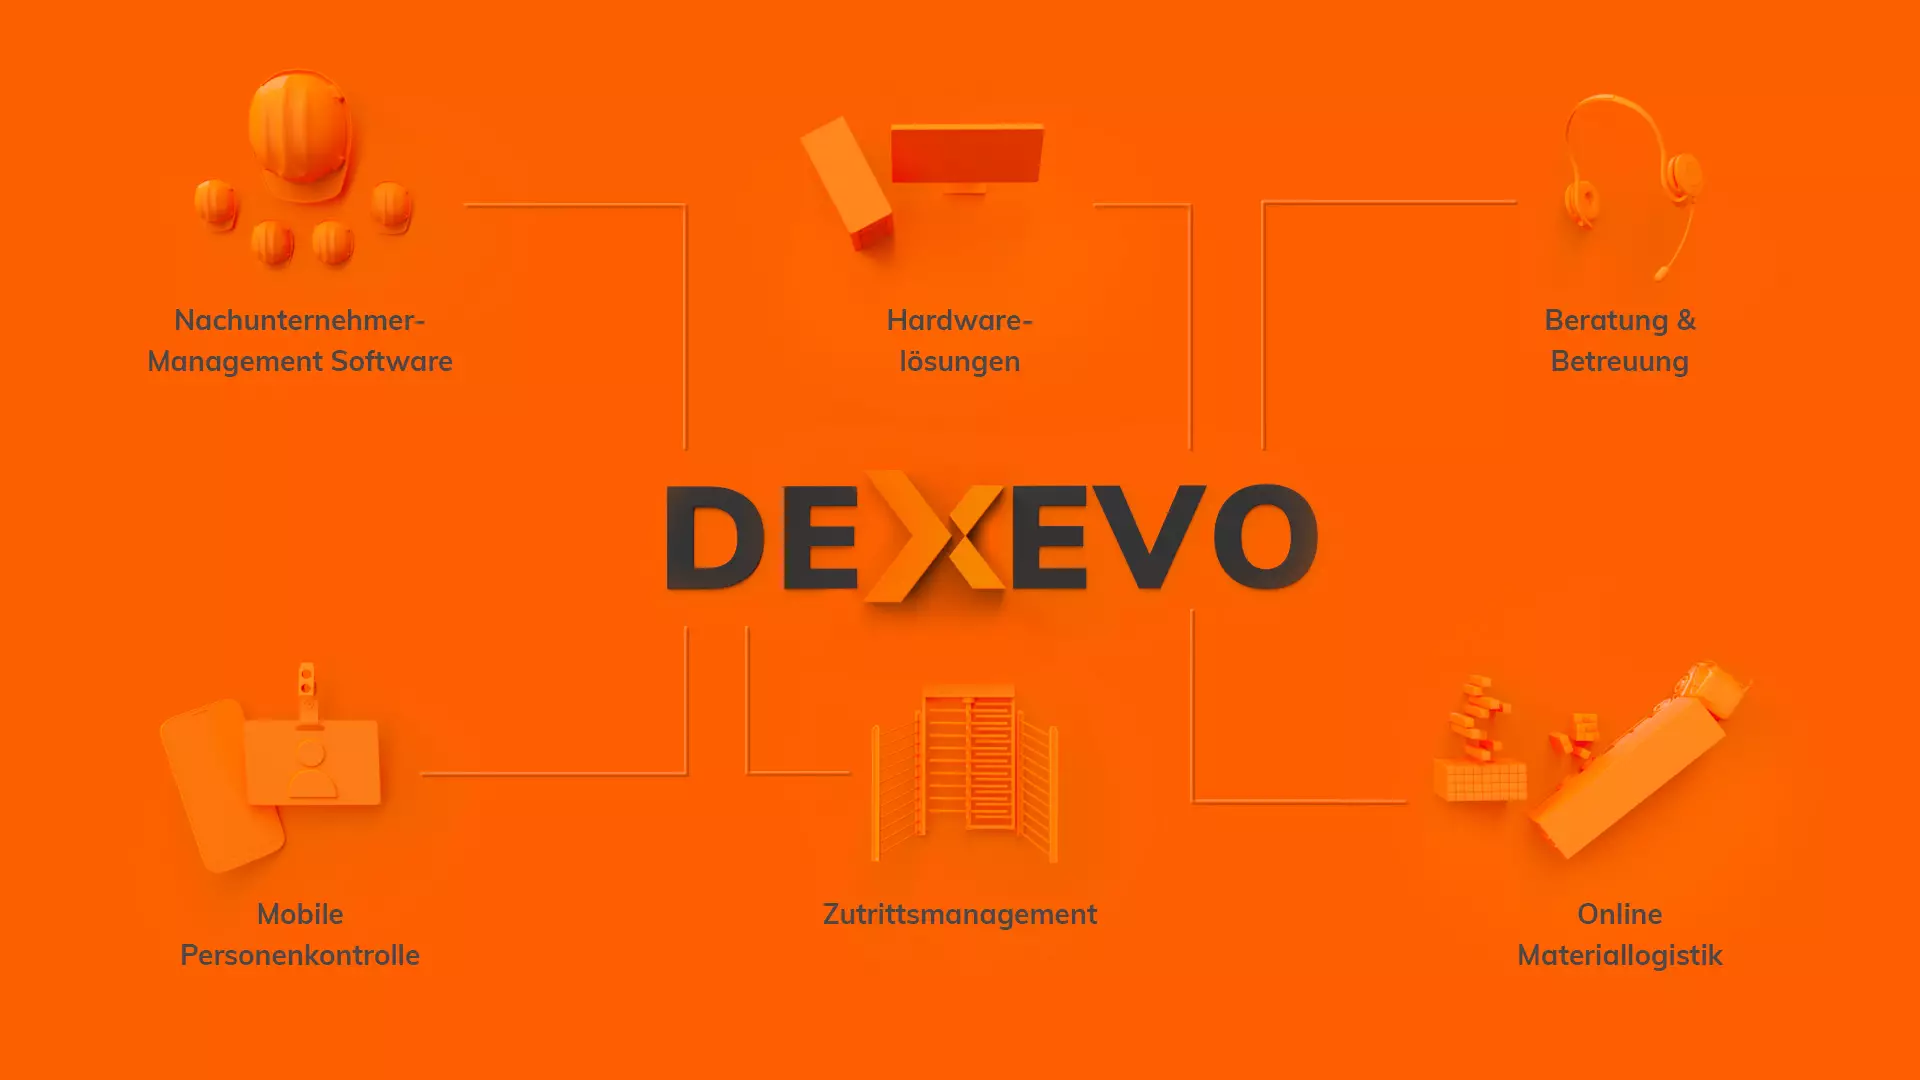 Erklärung DEXEVO: Software- und Hardwarelösungen, Beratung & Betreuung, Mobile Personenkontrolle, Zutrittsmanagement, Online-Materiallogistik